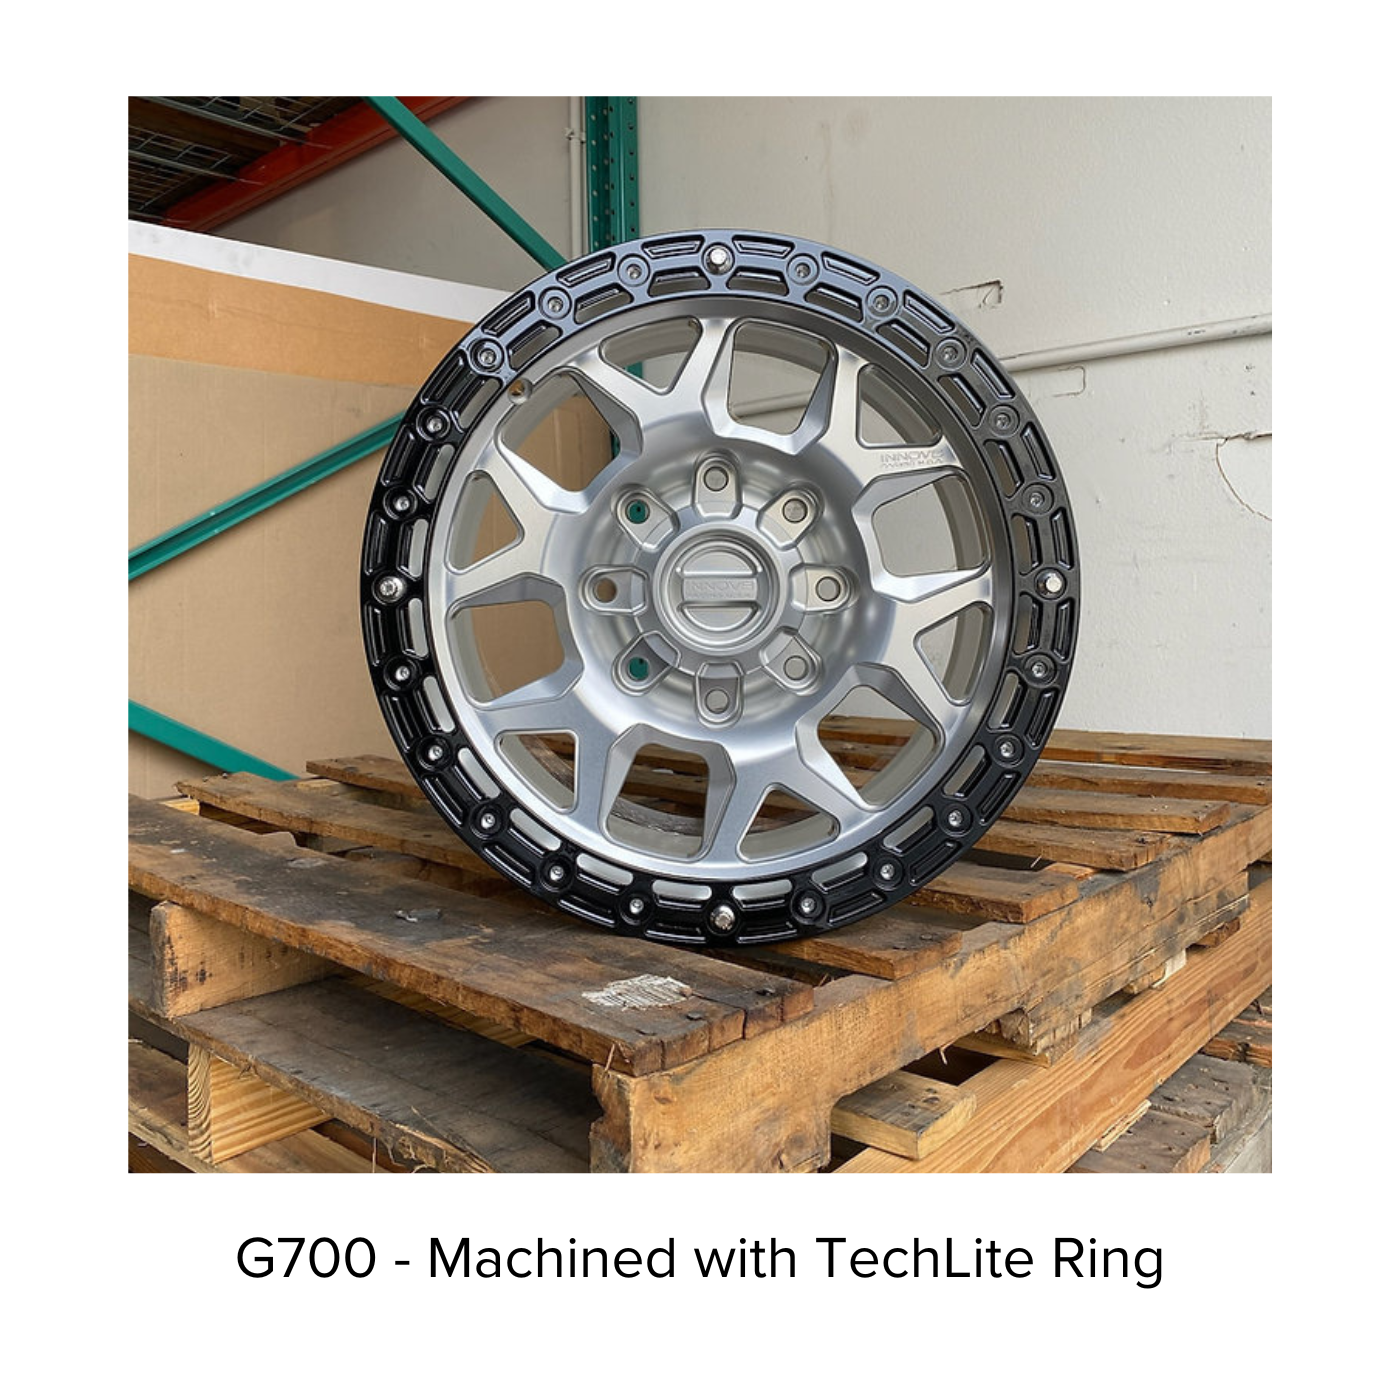 G700 Simulated Beadlock Wheel 20x10.0" 8 Lug - TechLite Ring display